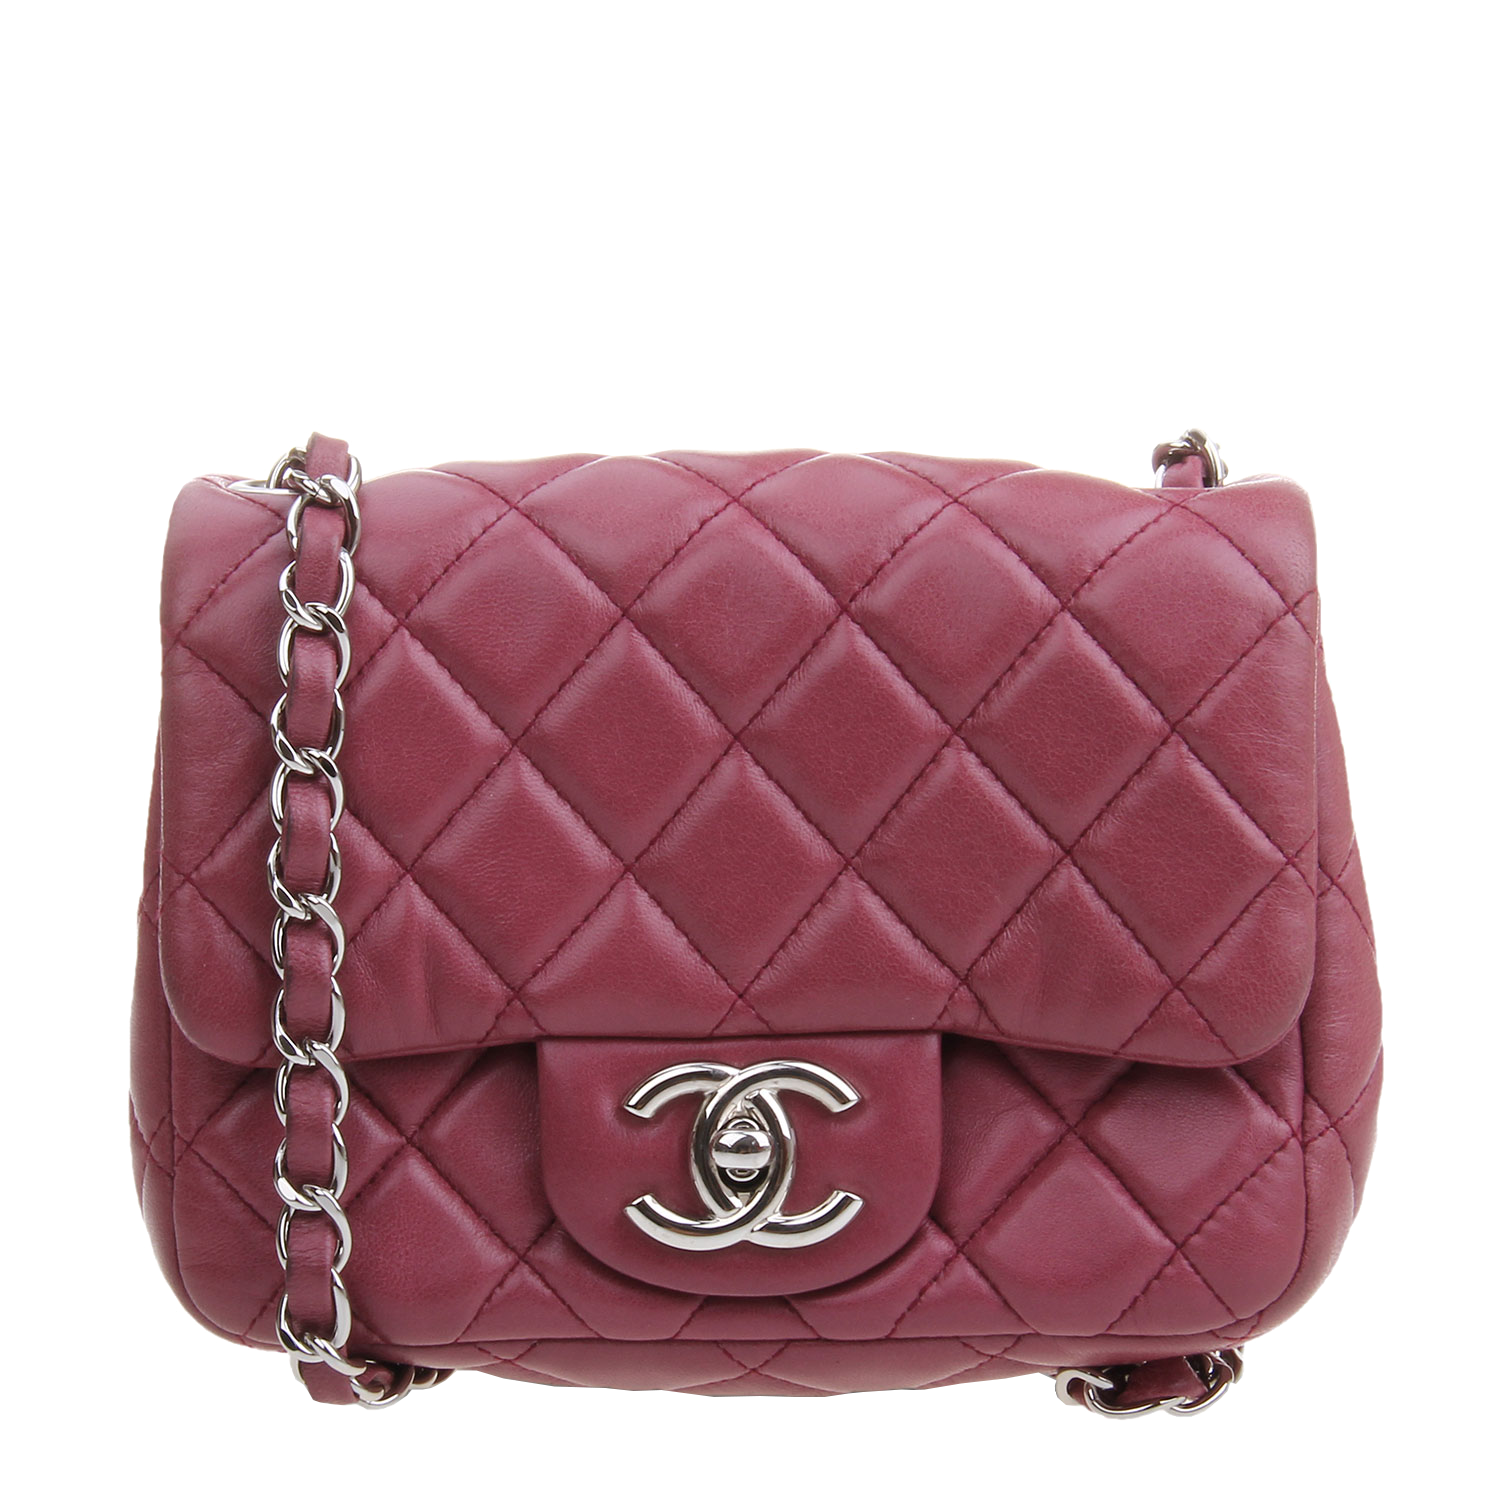 Shoulder Fashion Leather Bag Handbag Chanel PNG Image